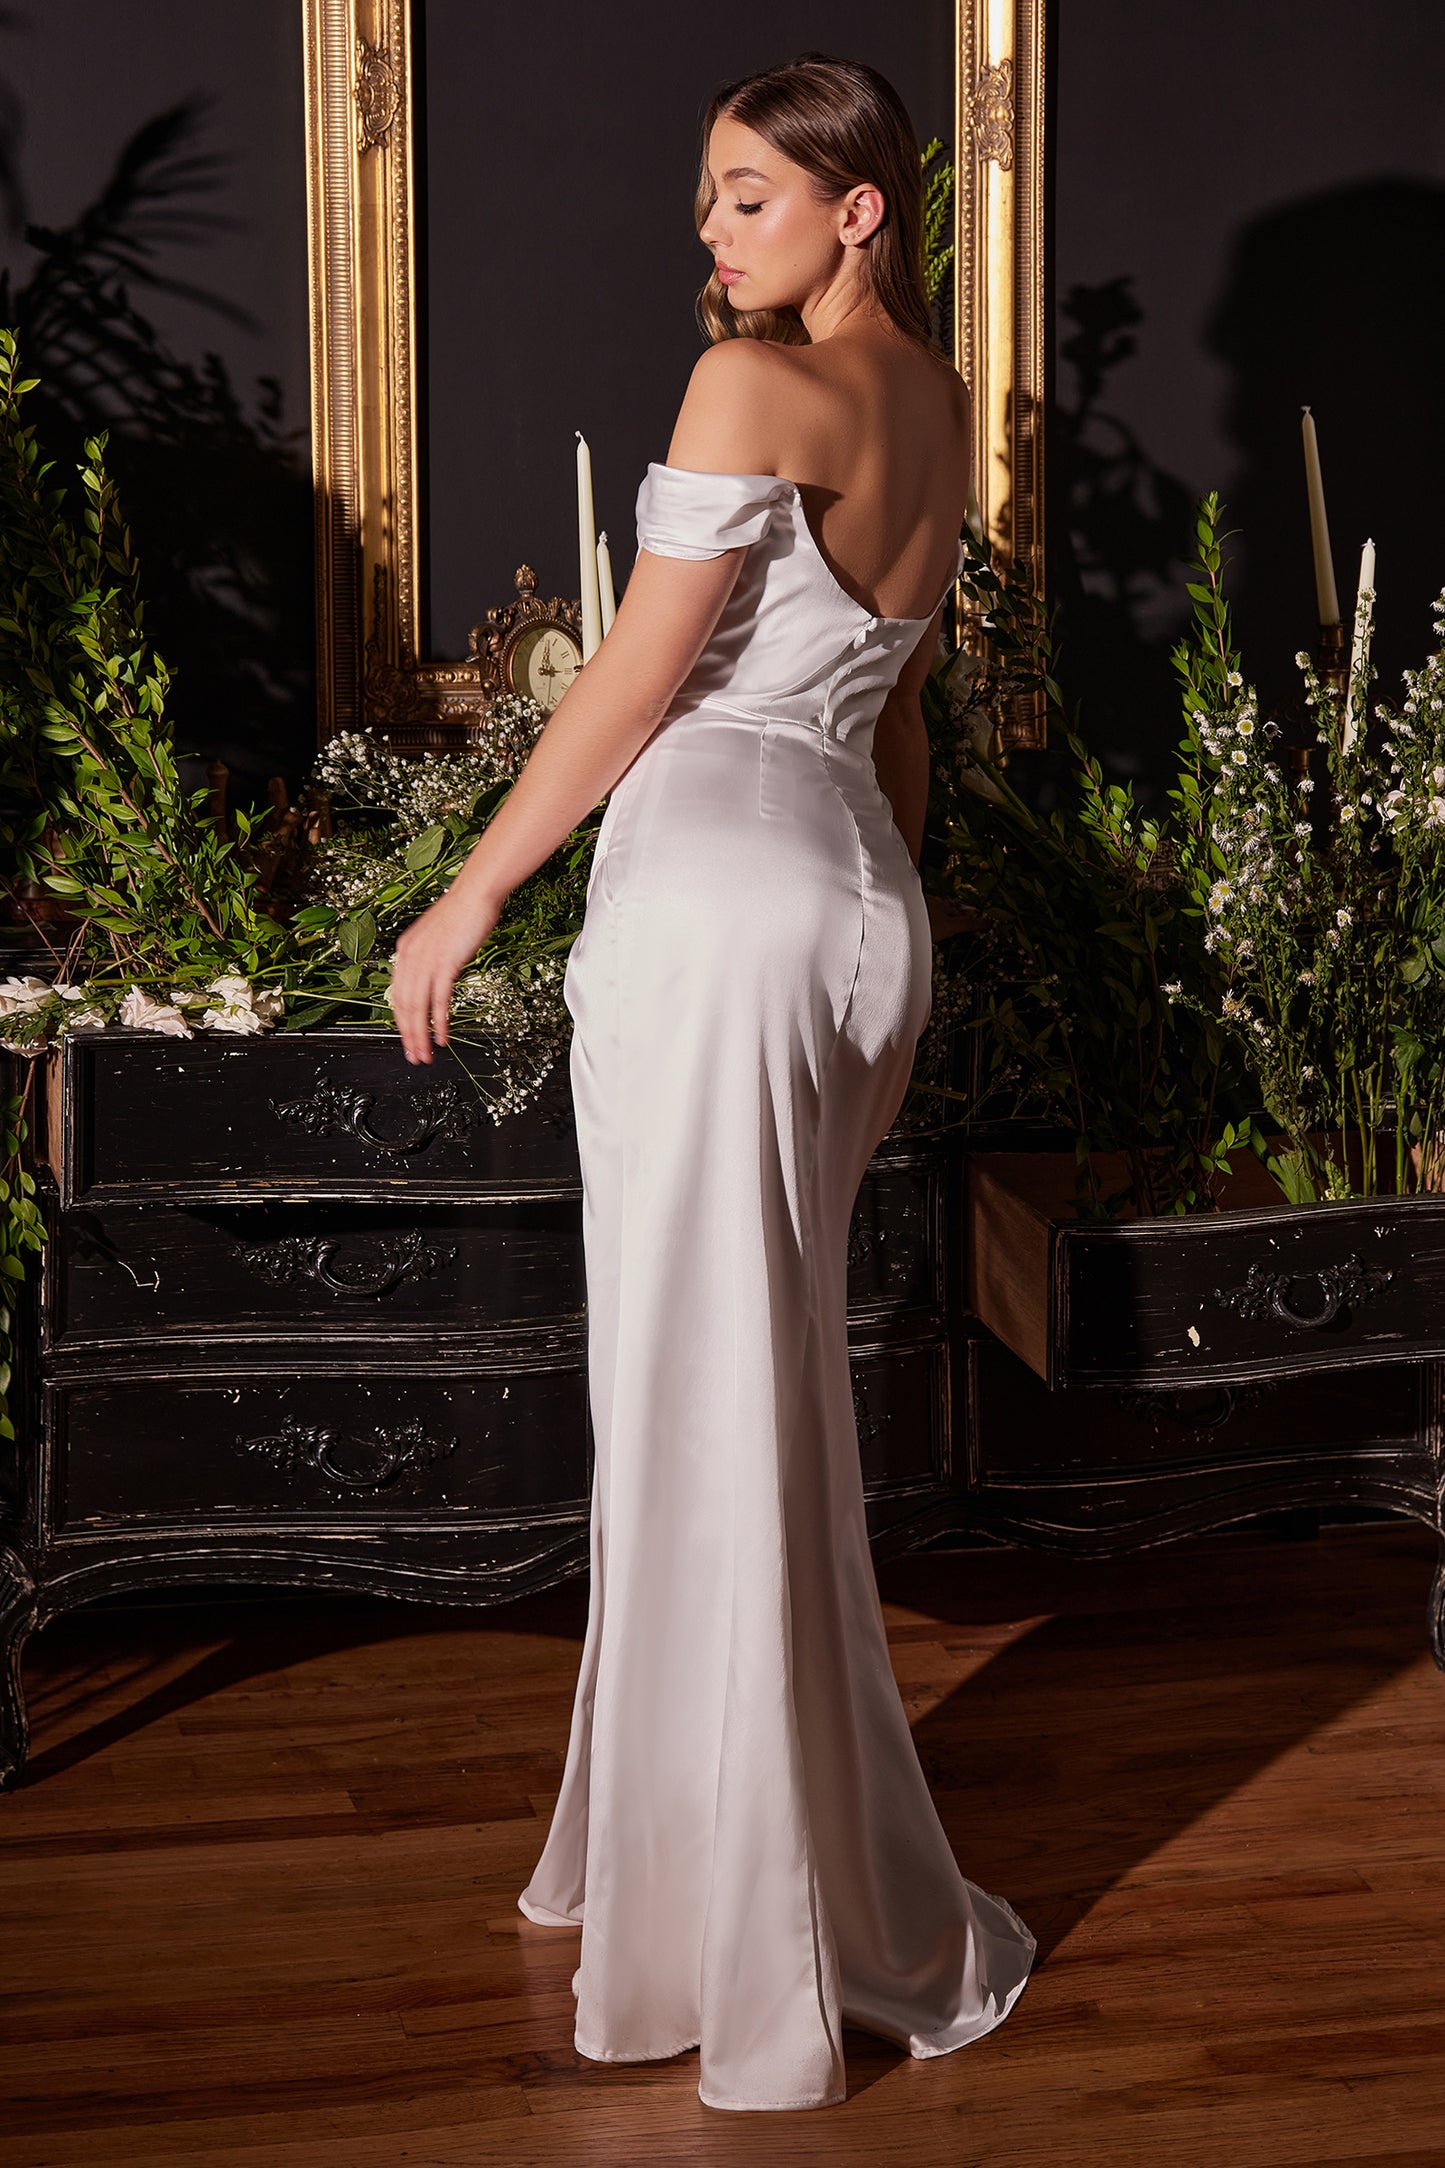 Romántico vestido de novia de satin con hombros descubiertos con una silueta ajustada y una preciosa abertura en pierna